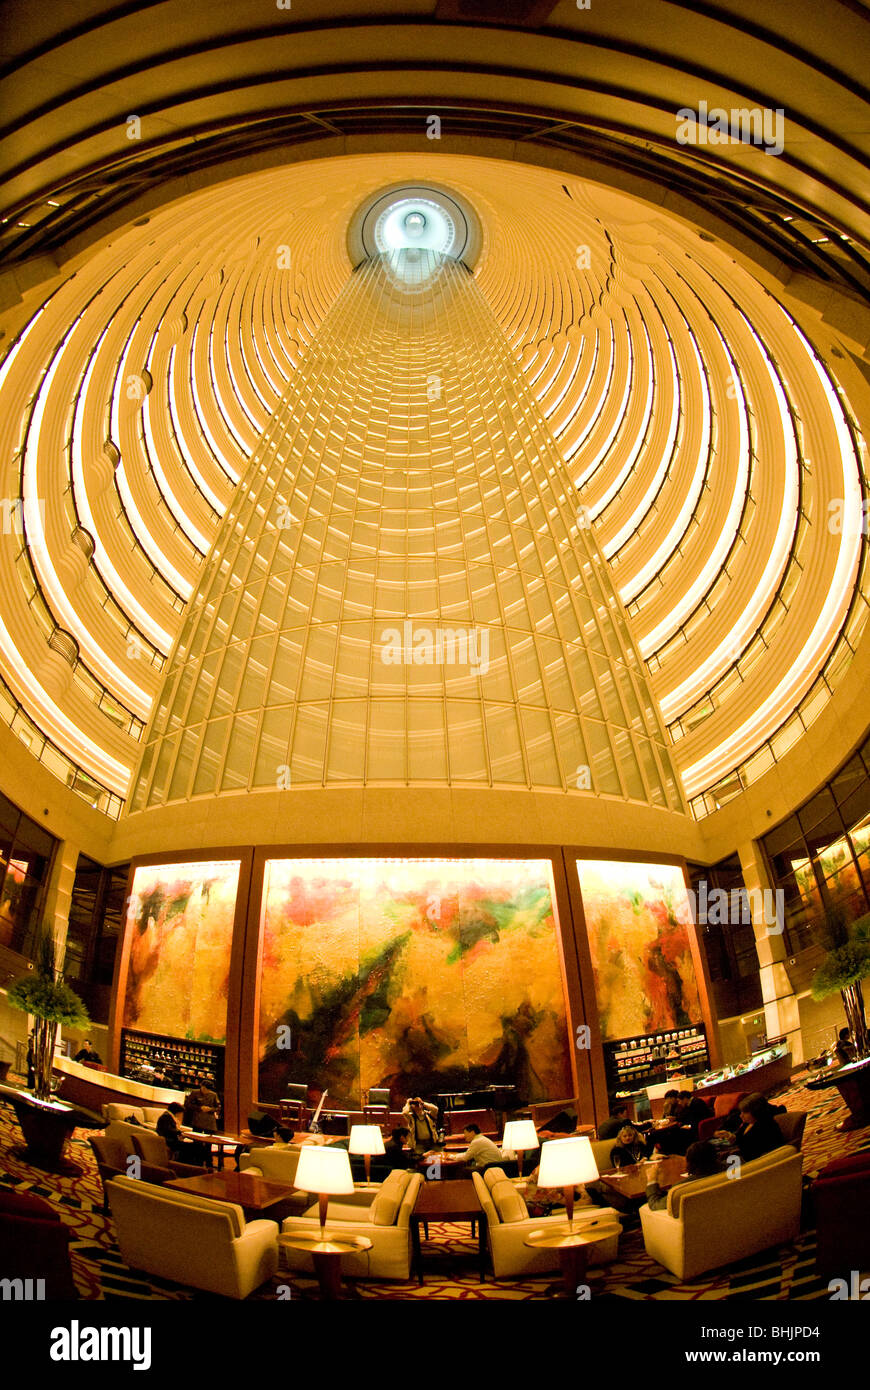 Grand Hyatt hotel in the Jin Mao Tower, Shanghai, China, Asia Stock Photo